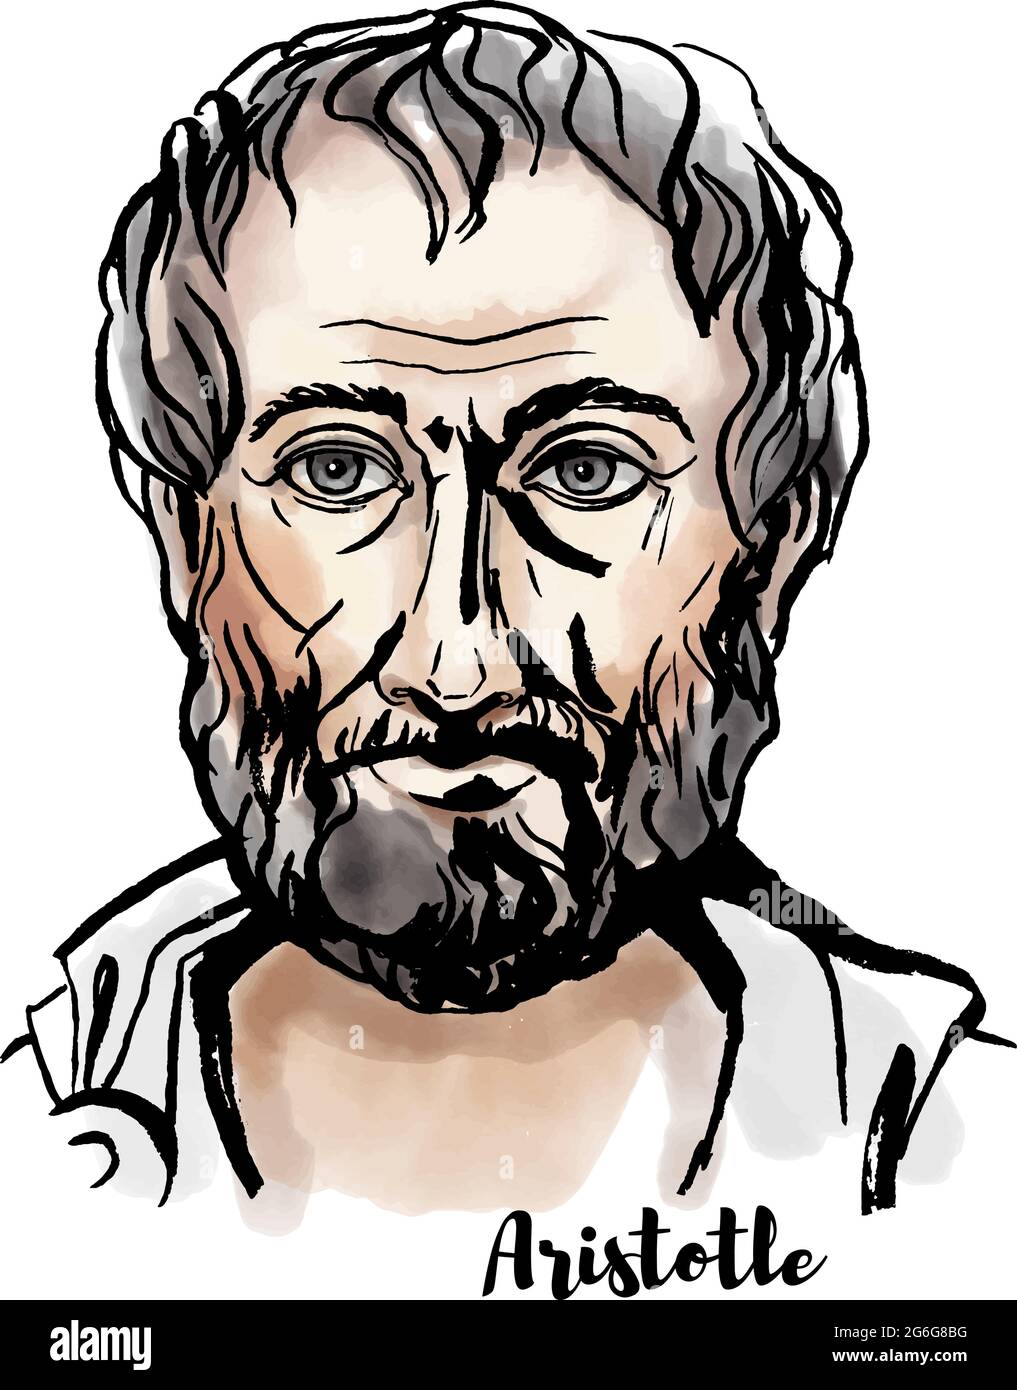 Aristoteles Aquarell-Vektor-Porträt mit Farbkonturen. Altgriechischer Philosoph und Wissenschaftler. Stock Vektor